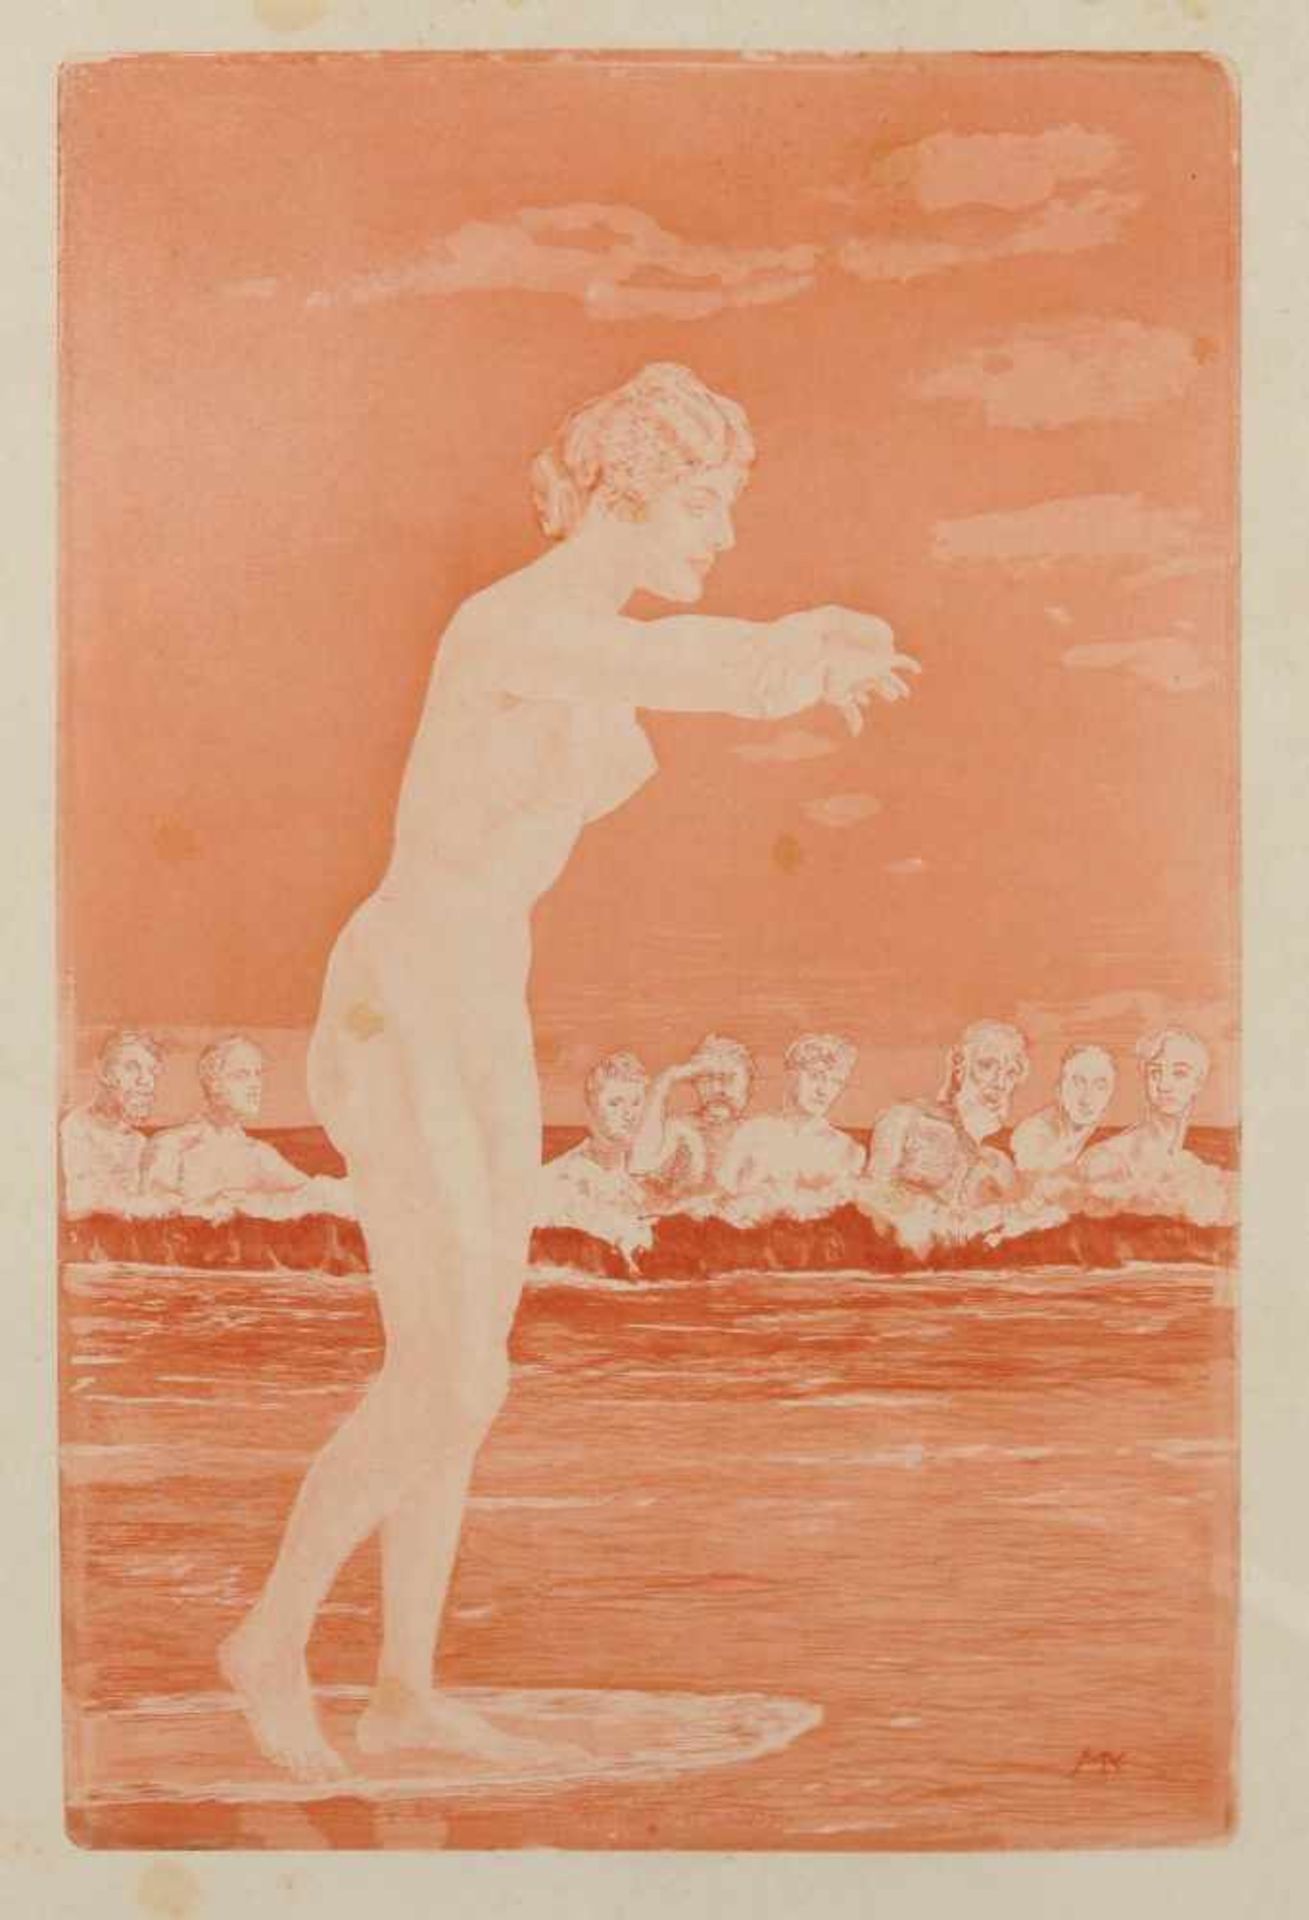 Max Klinger "Die Schaumgeborene" (Venus Anadyomene). 1915. Radierung und Aquatinta in Rot auf Japan.